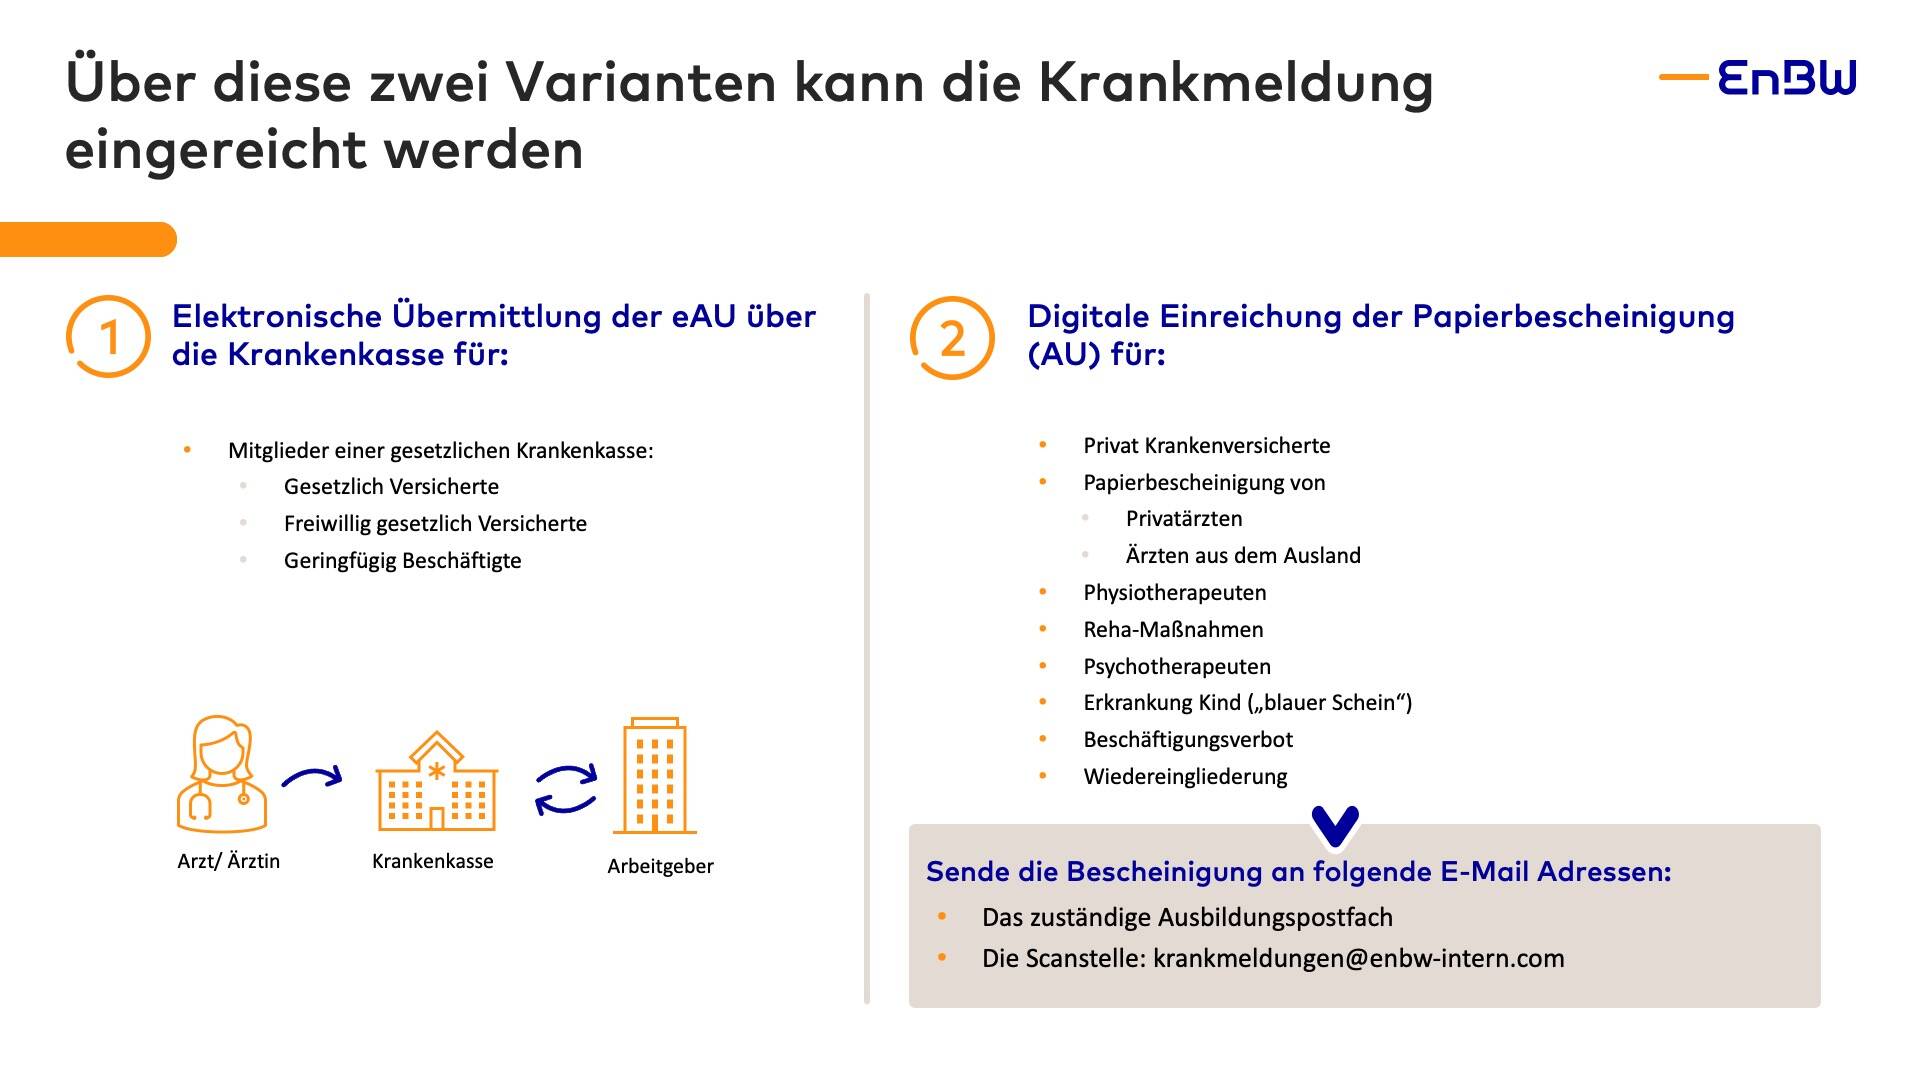 Erste Informationen zur Ausbildung - Standort Karlsruhe 11